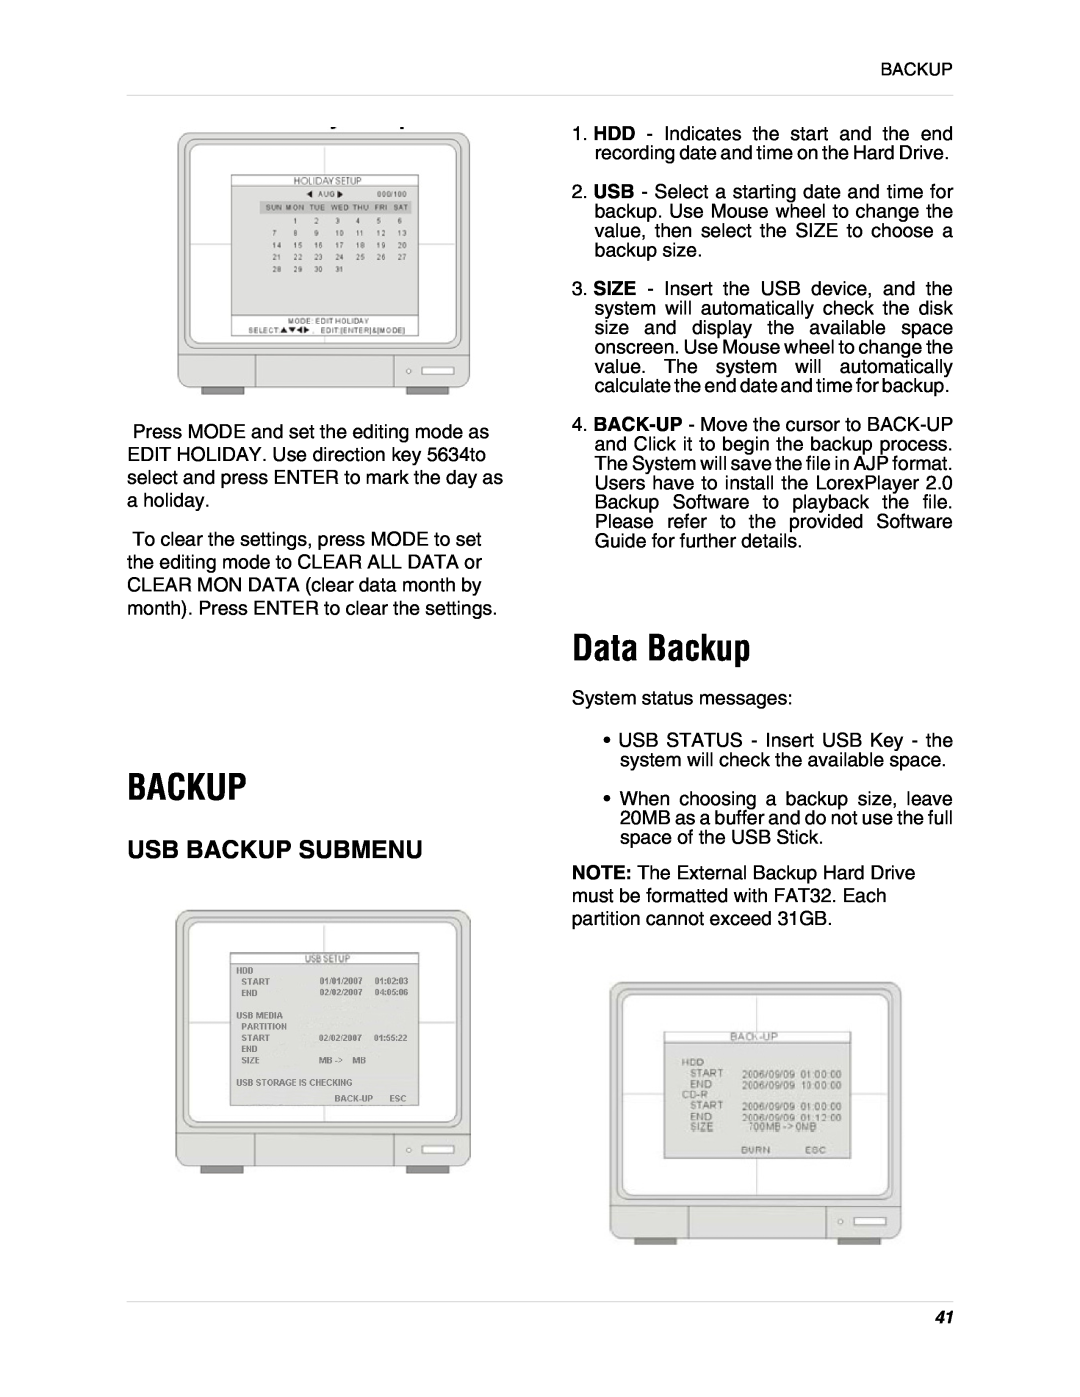 LOREX Technology L19lD1616501 instruction manual Data Backup, Usb Backup Submenu 